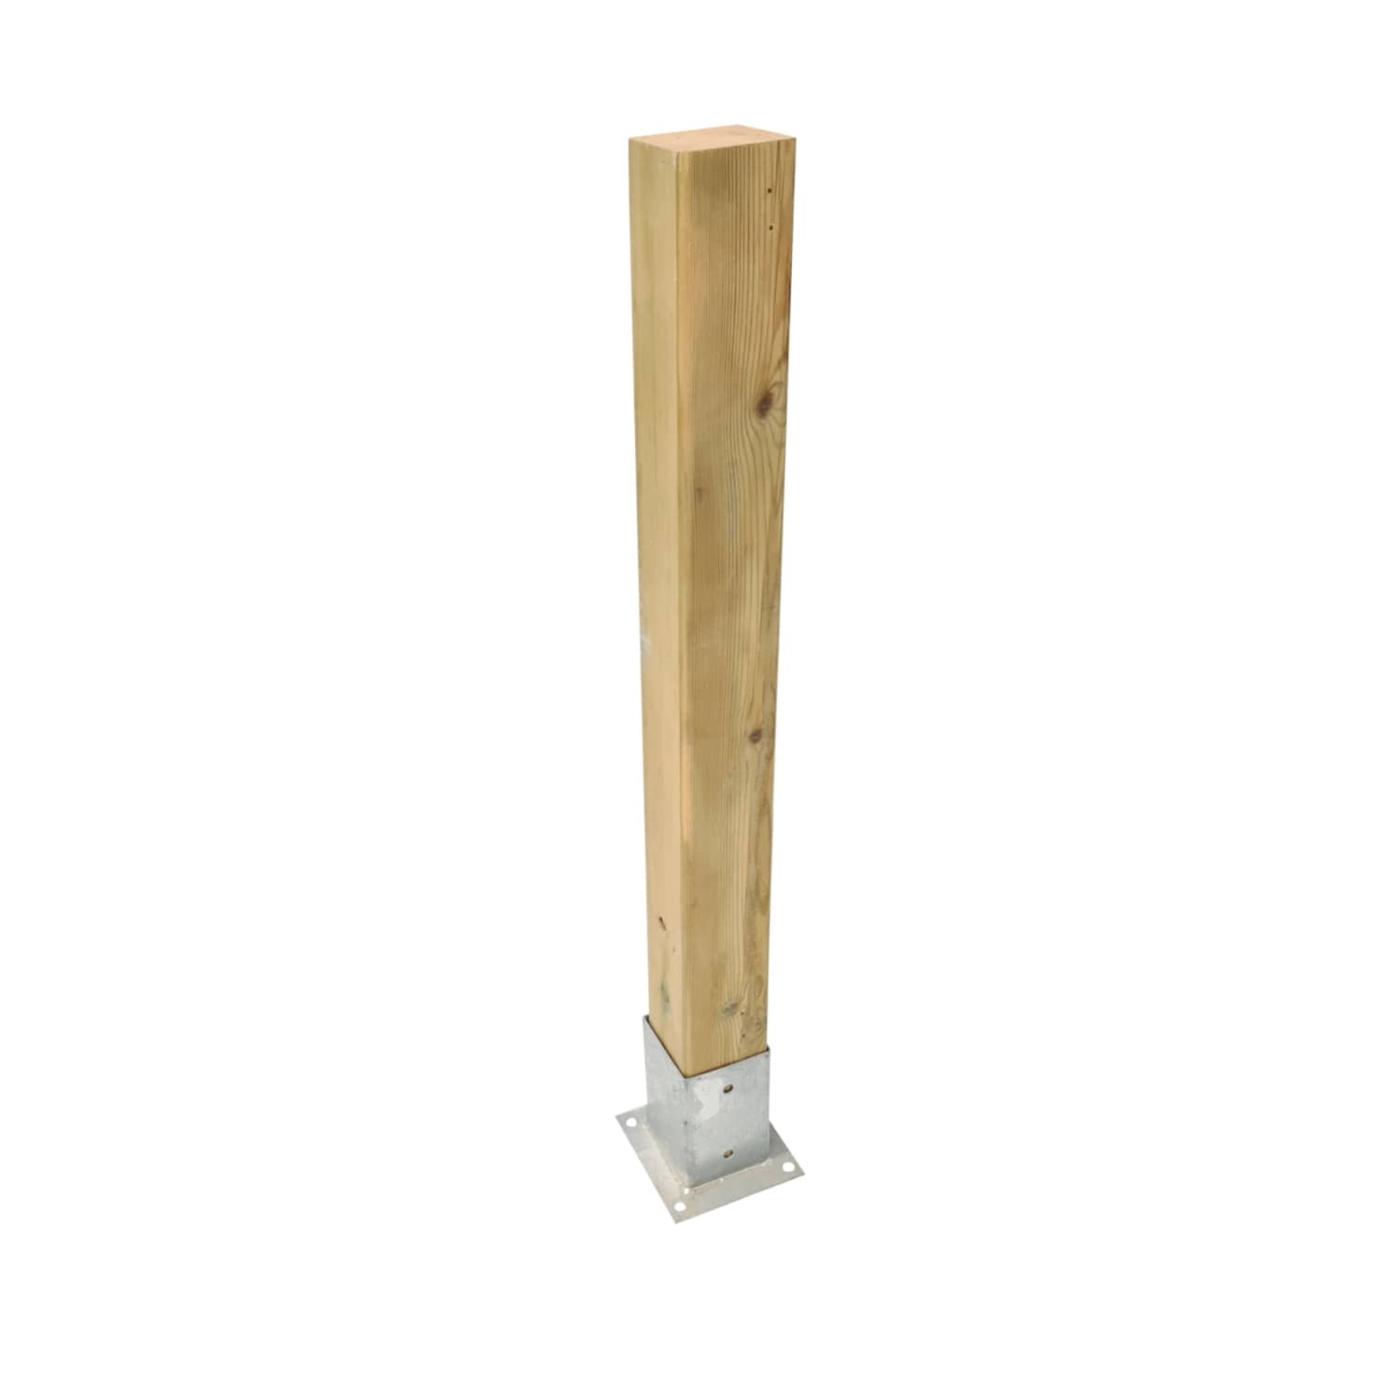 Pilar de madera de 88x88mm para vallas de exterior homologadas MASGAMES